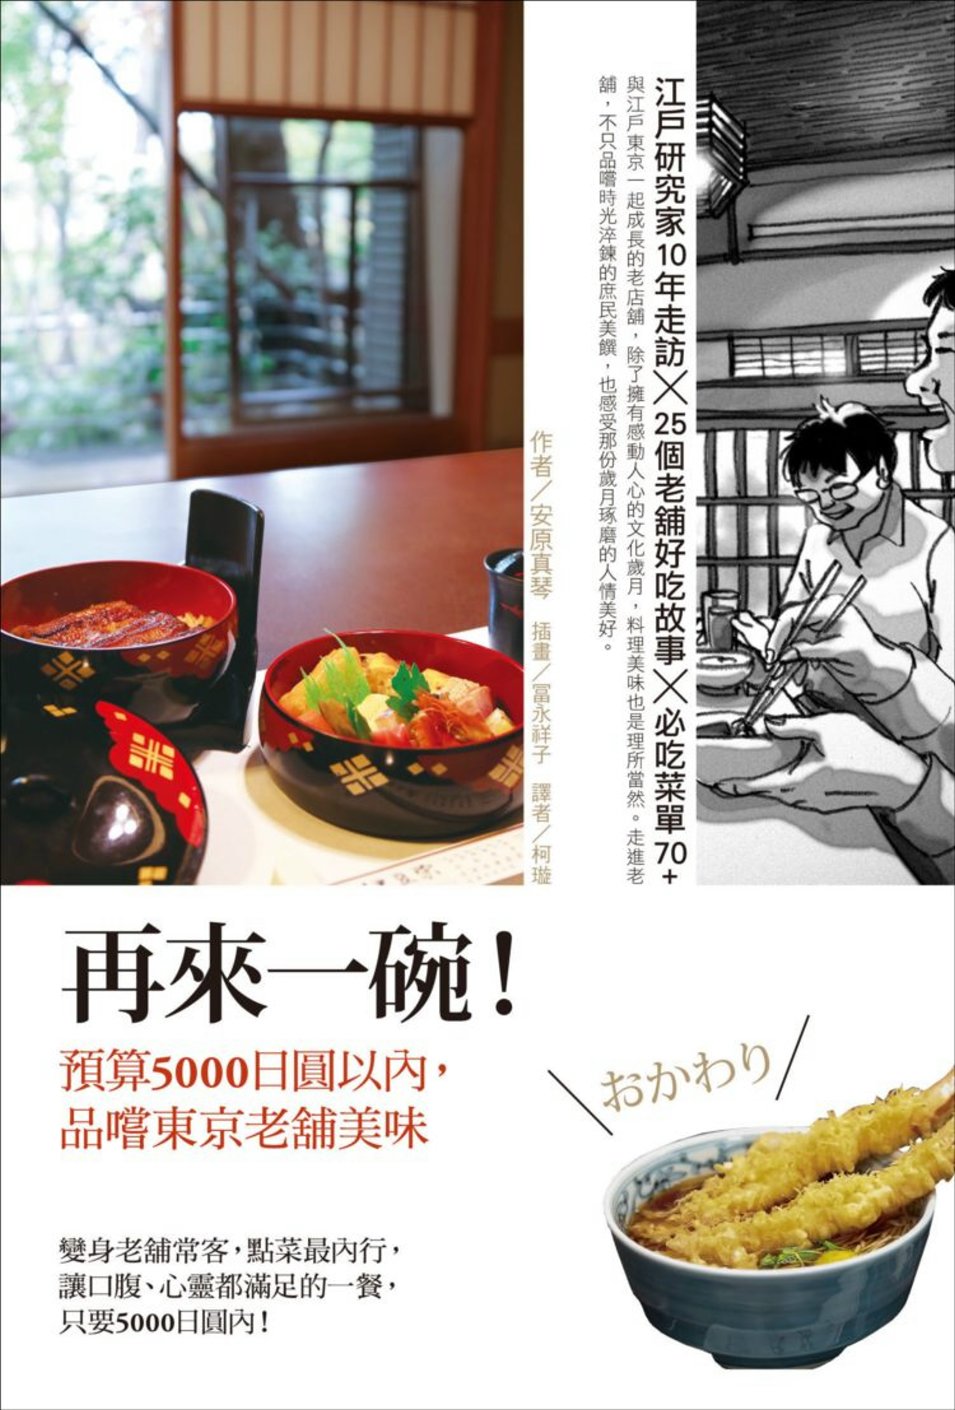 再來一碗！：預算5000日圓以內，品嚐東京老舖美味